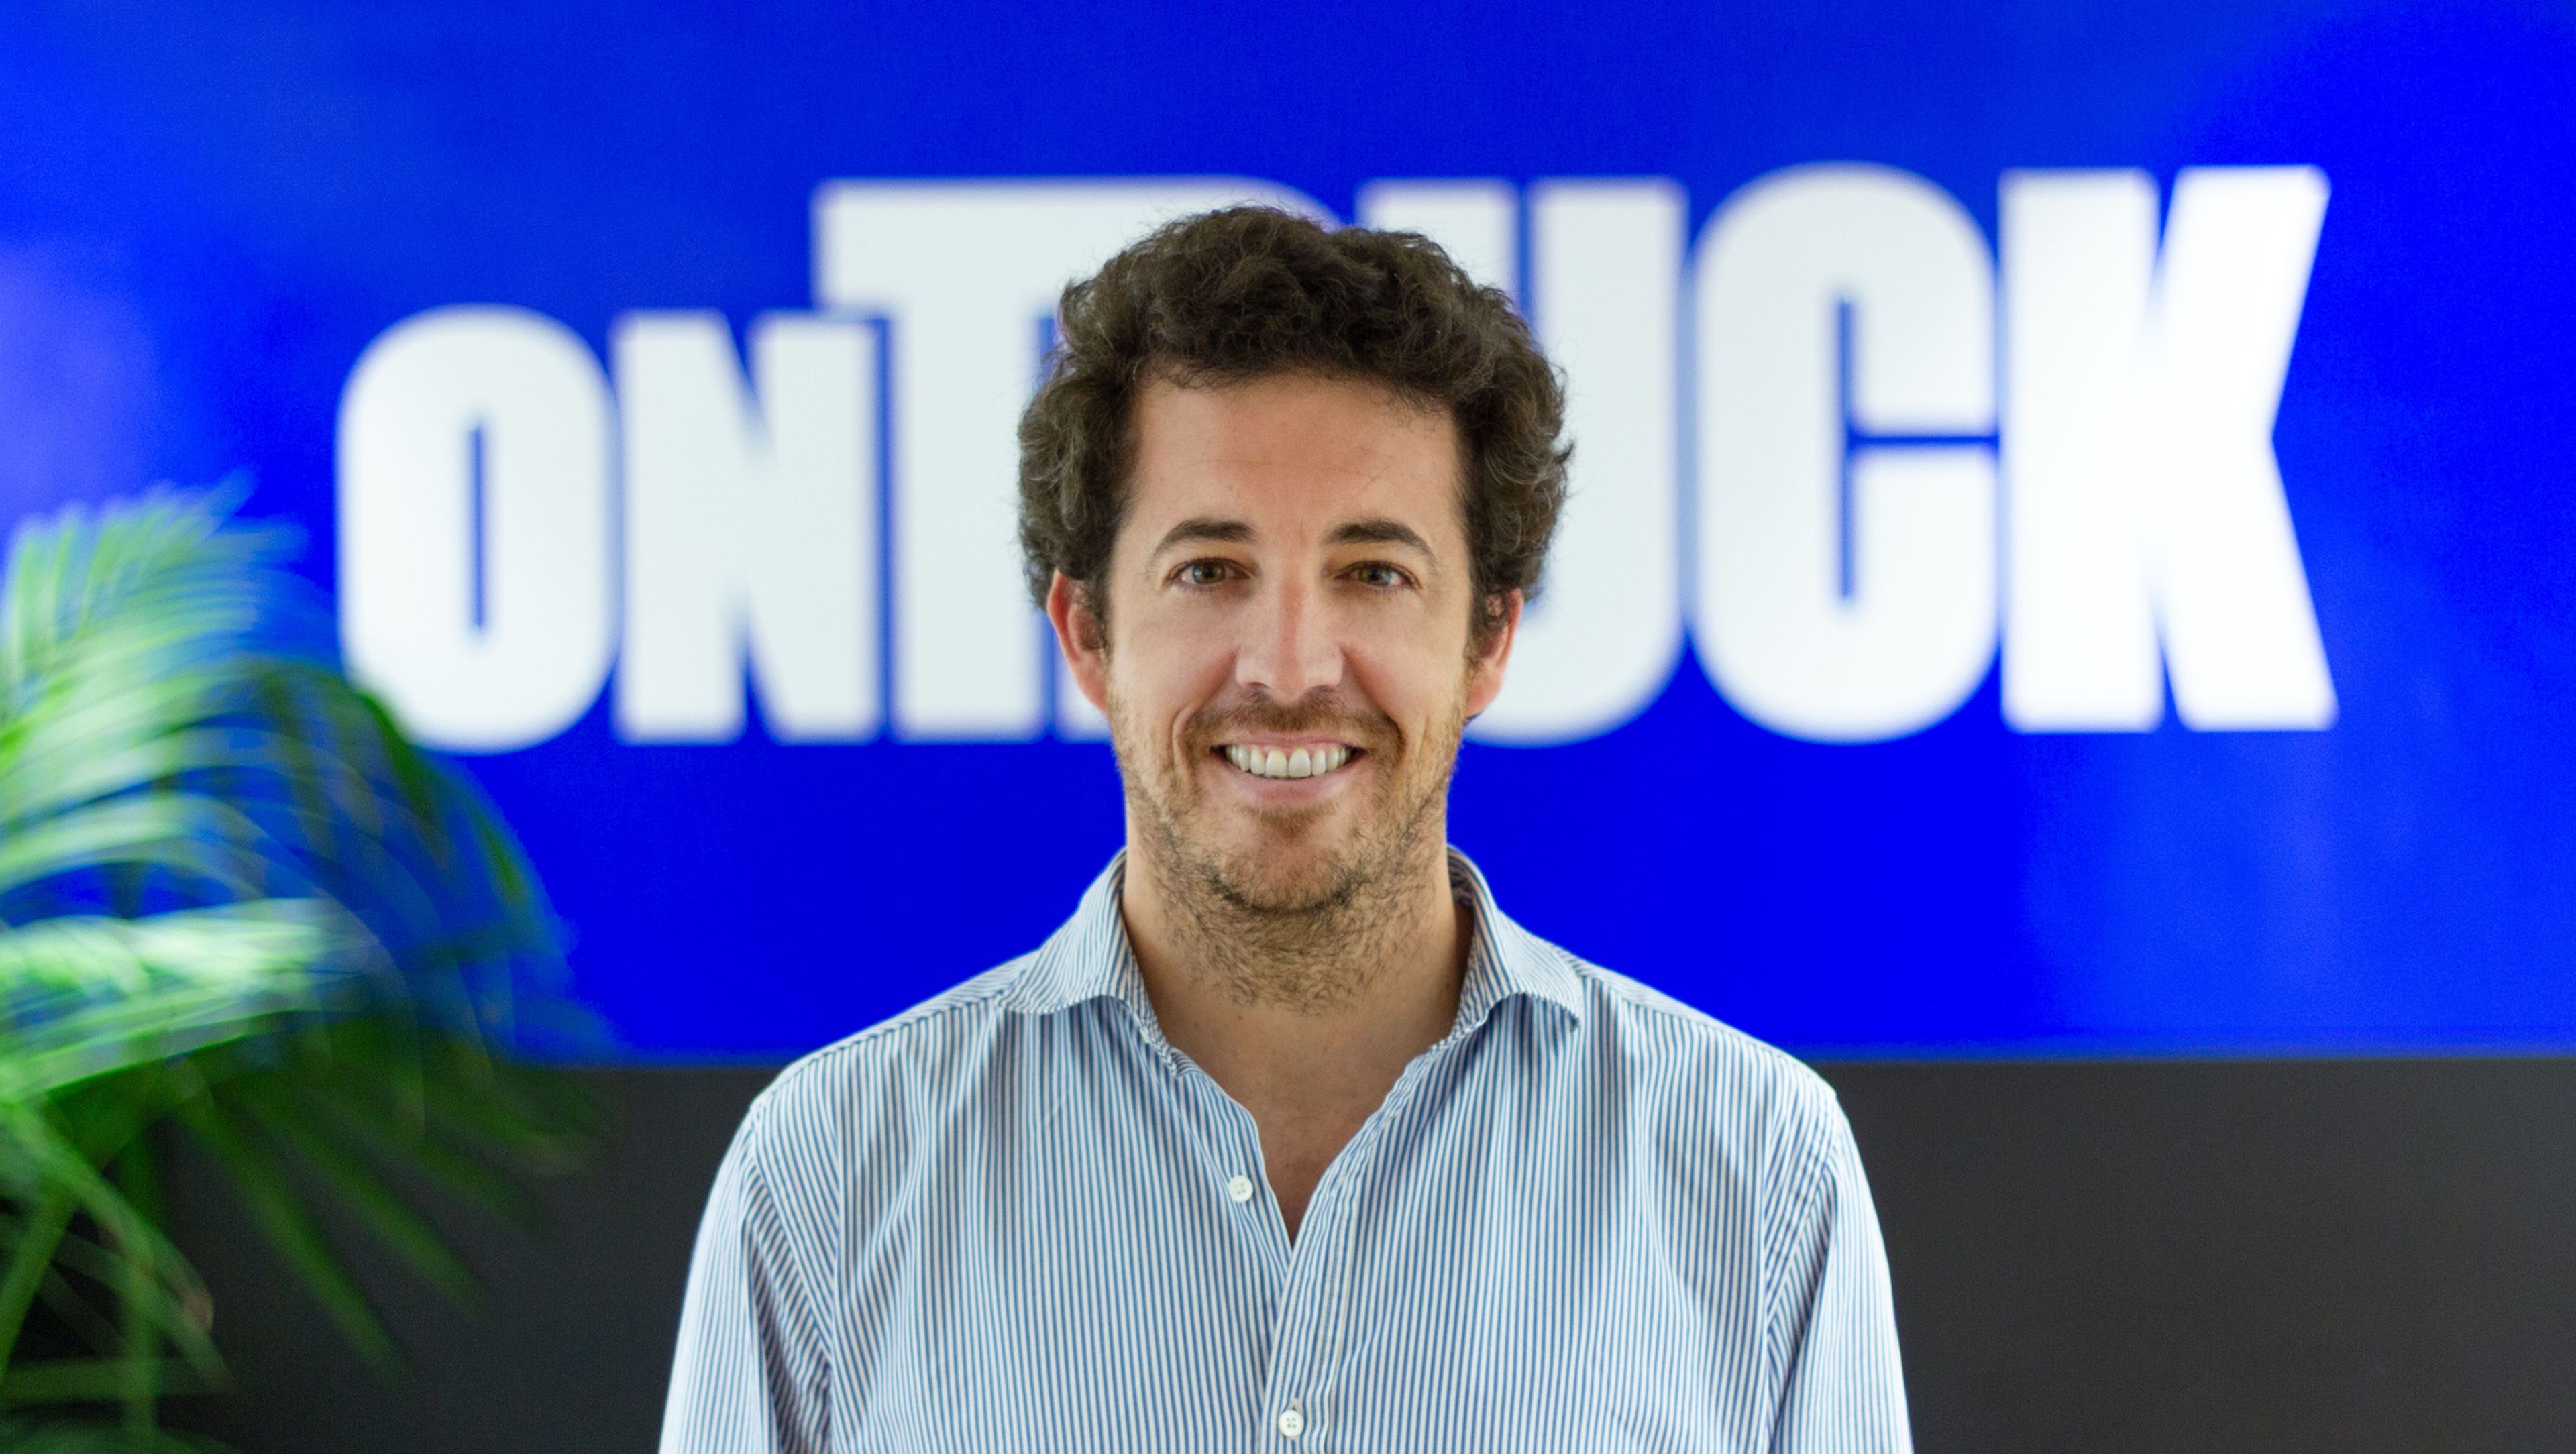 El cofundador y CEO de Ontruck, Íñigo Juantegui